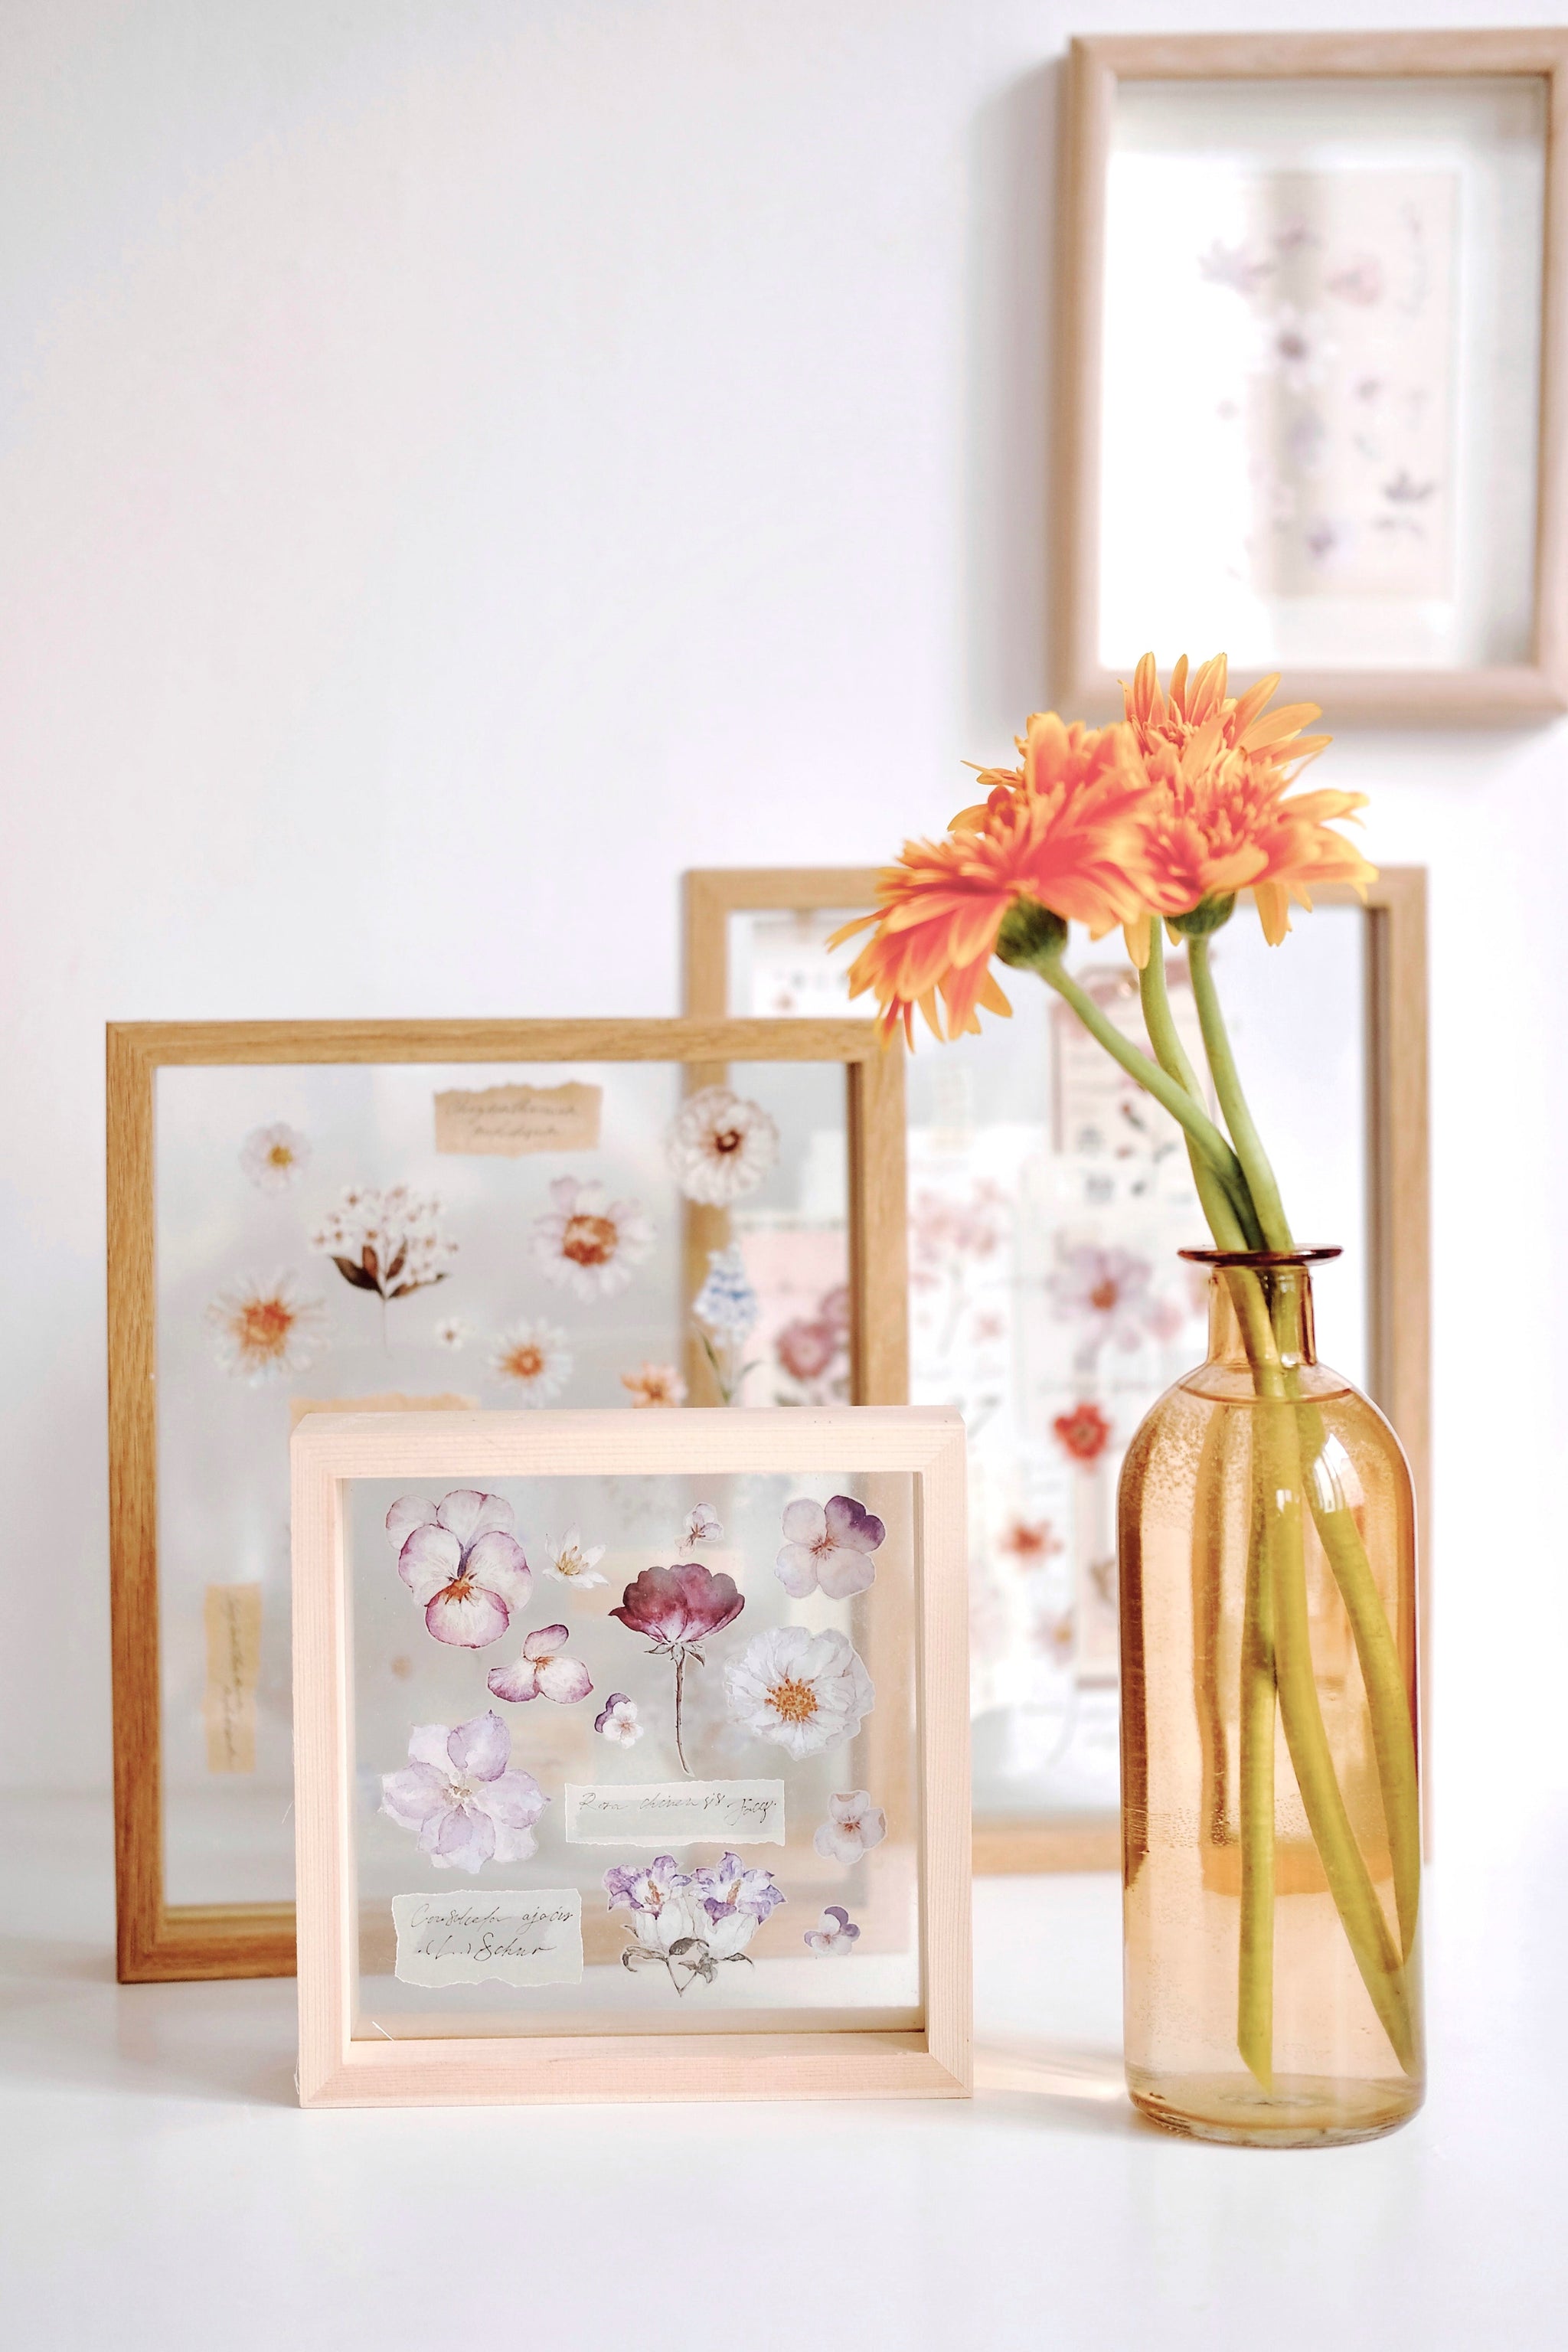 Freckles Tea Tape: Illustrated Flowers Handbook